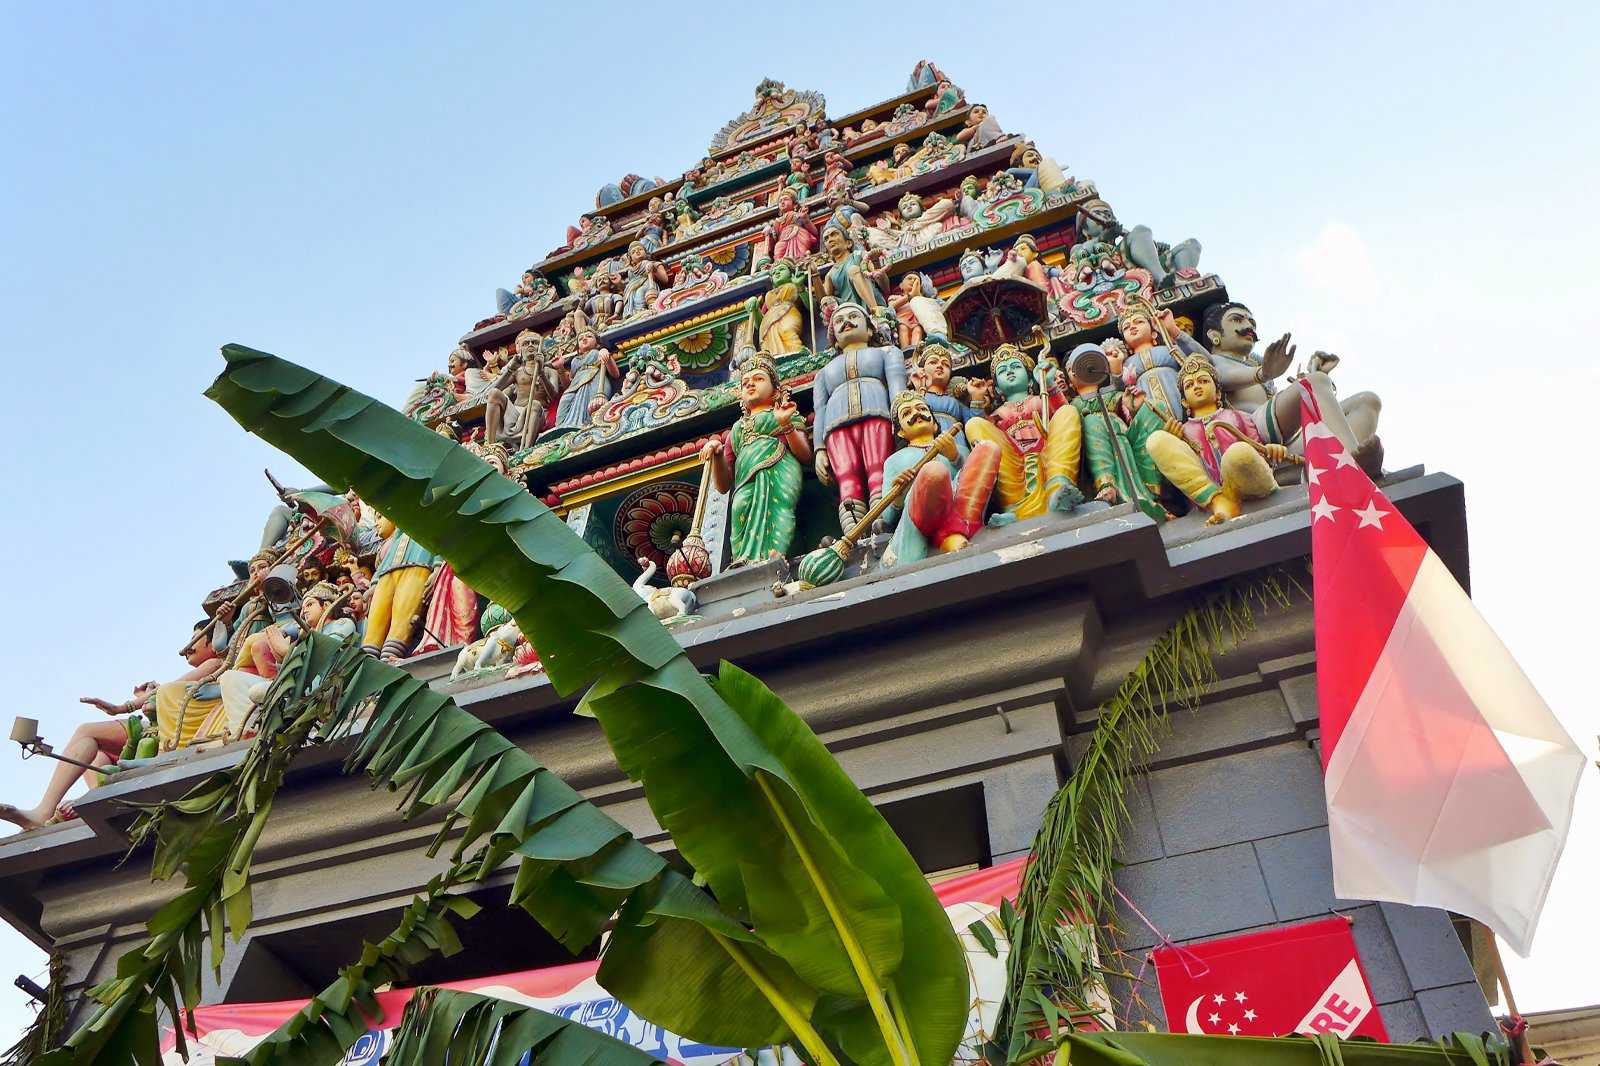 Sri Mariamman Temple